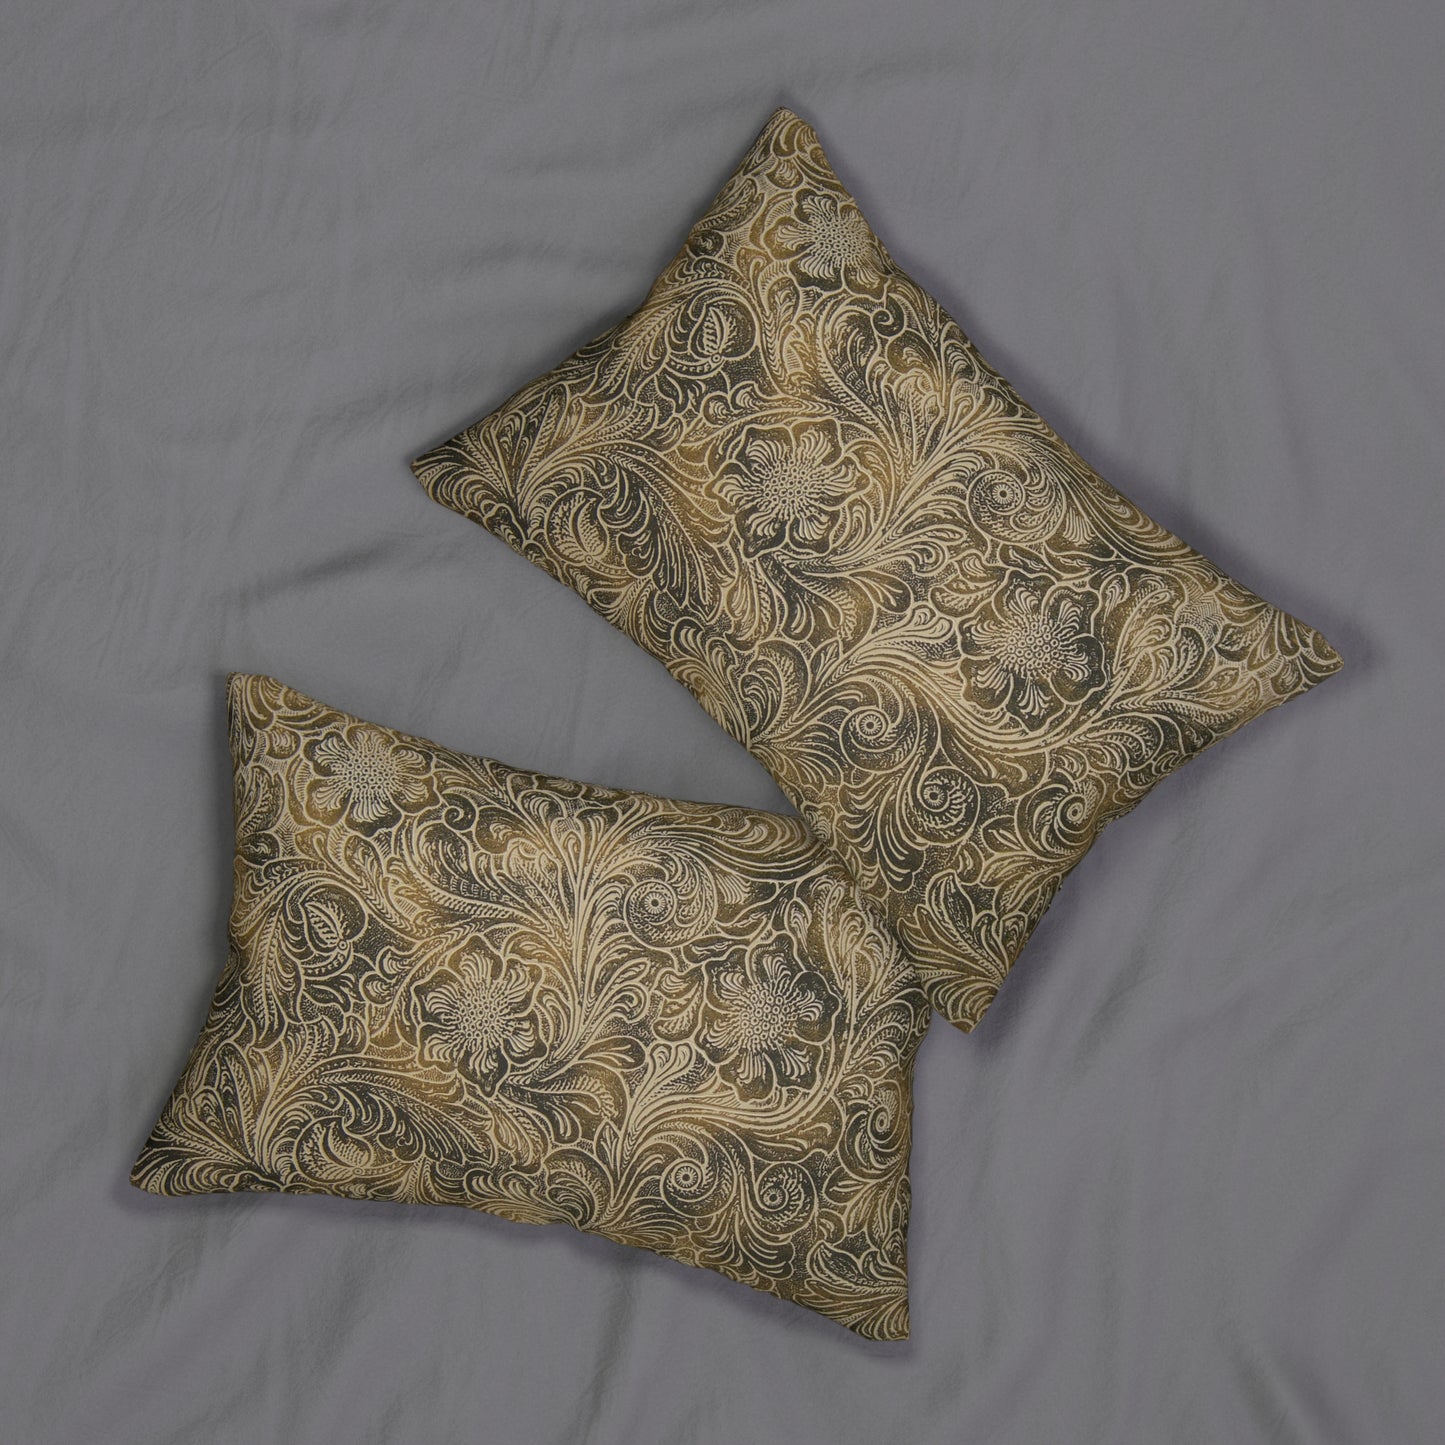 Western Leather Print Spun Polyester Lumbar Pillow